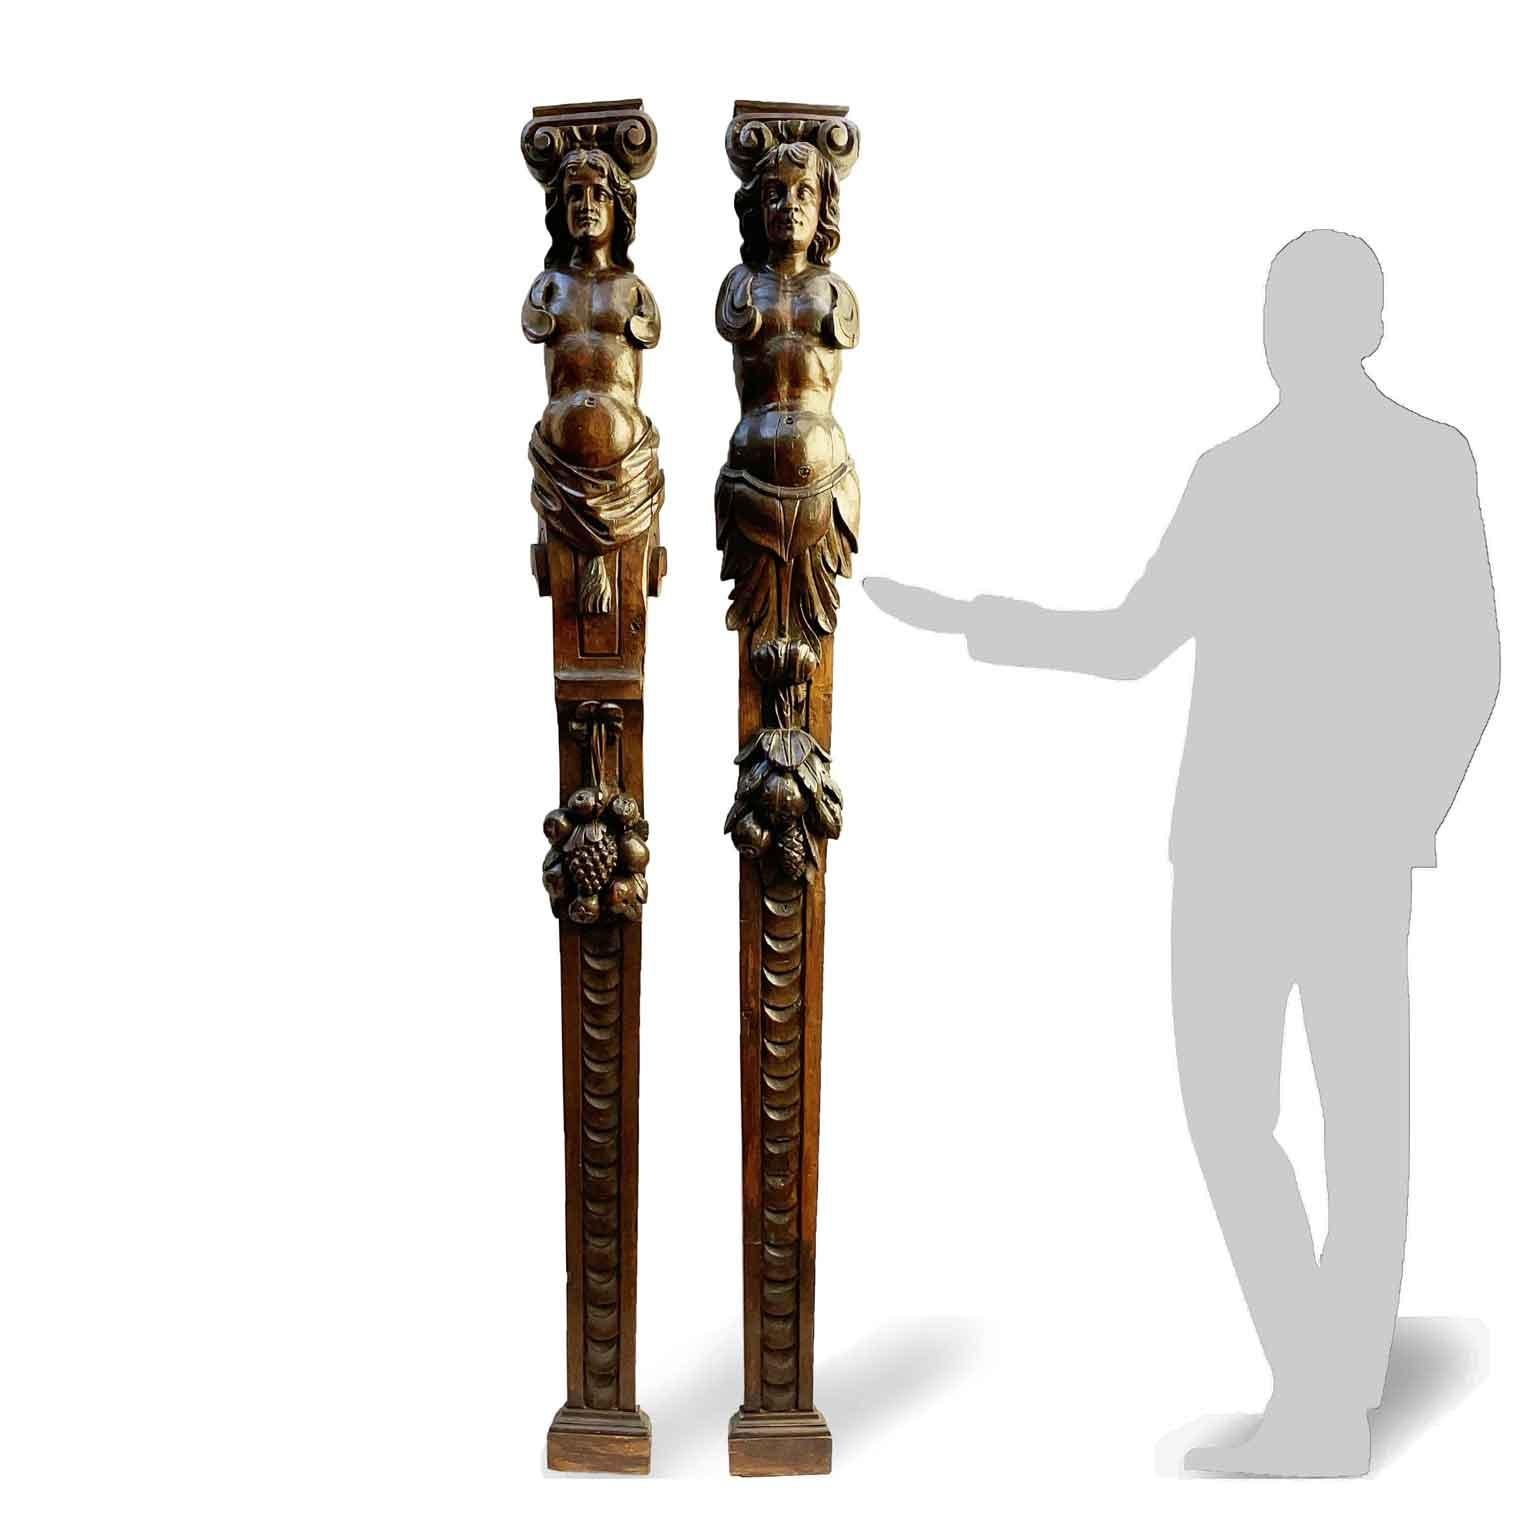 Einzigartiges Paar italienischer, handgeschnitzter Karyatiden aus der Zeit um 1500. Dieses antike, dunkel patinierte Renaissance-Skulpturenpaar mit einer Höhe von fast 210 cm stammt aus einem Chorensemble, das als Trennwand zwischen den Ständen